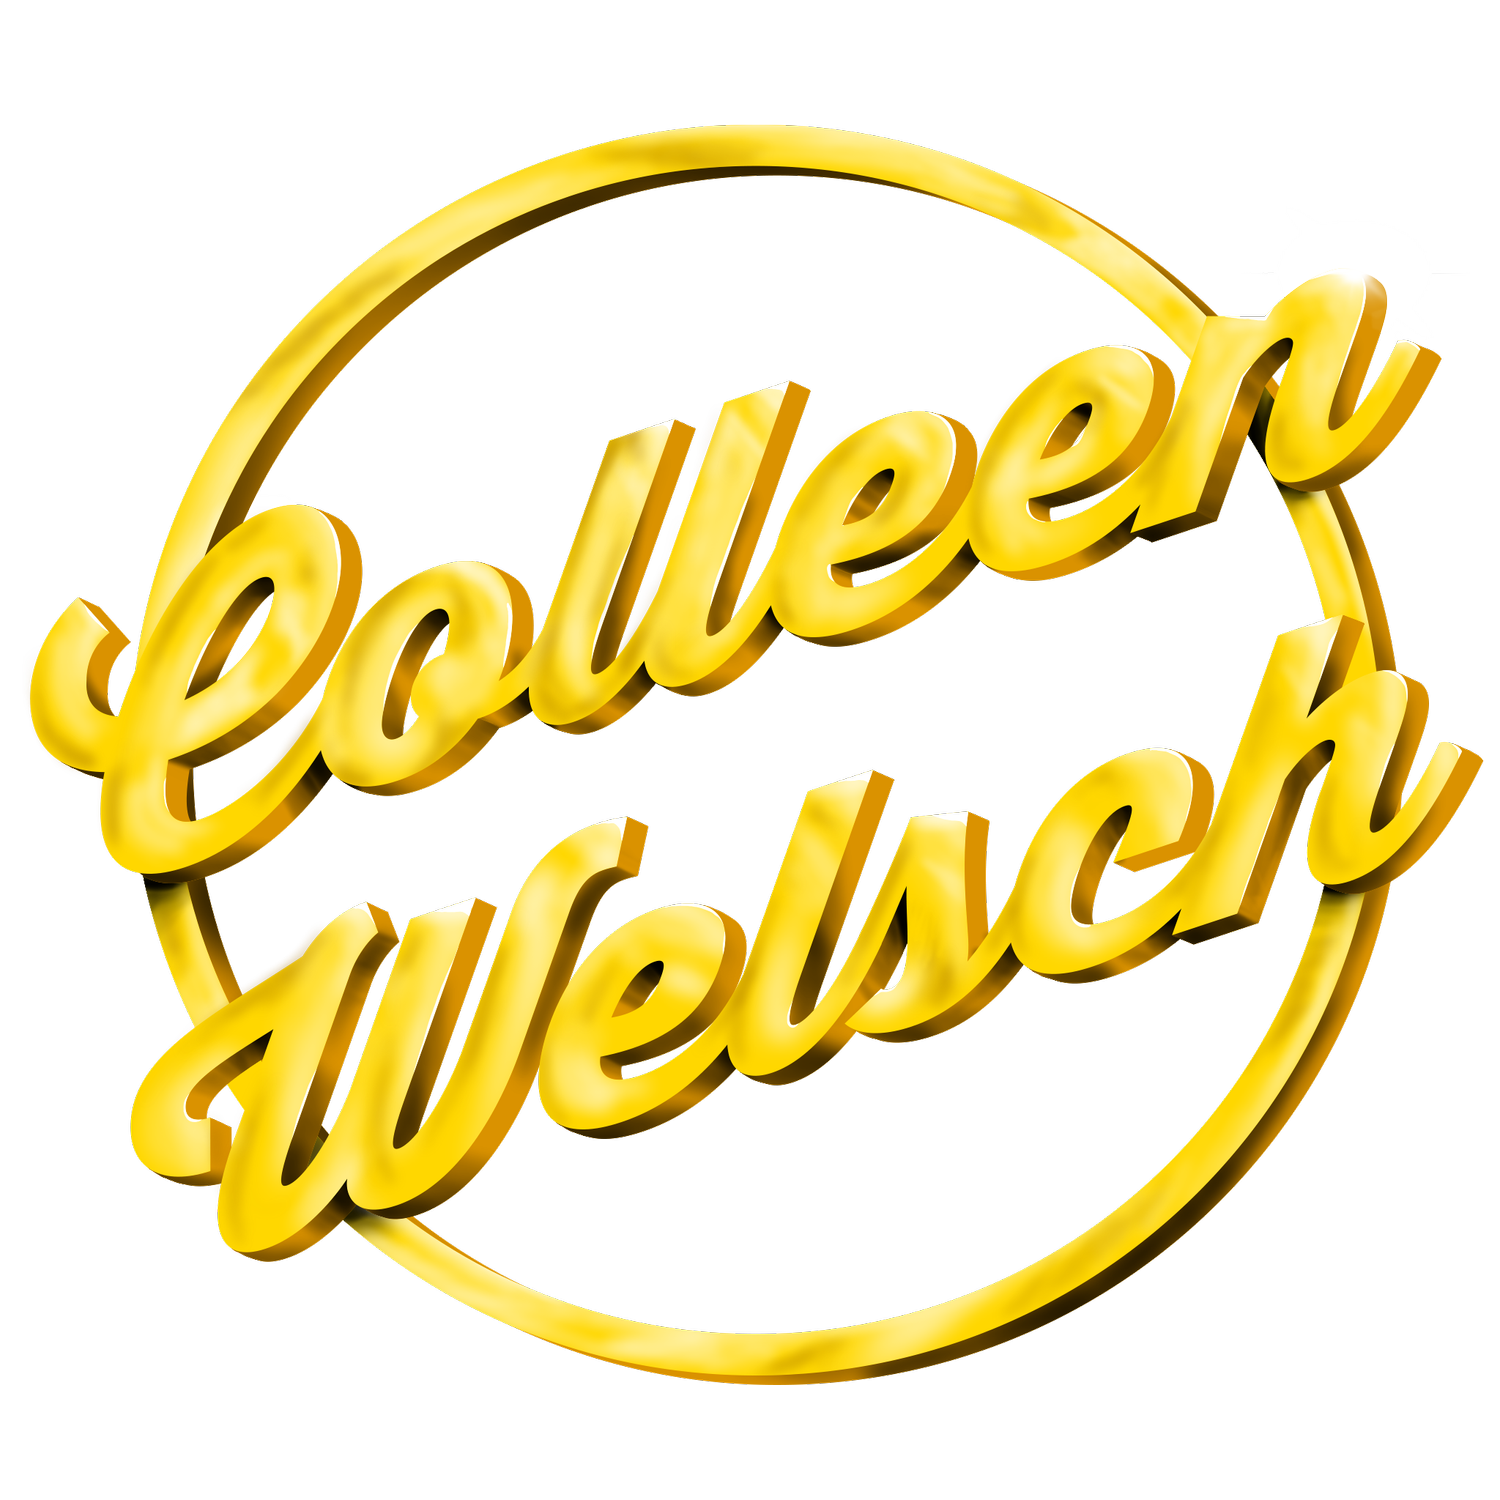 Colleen Welsch